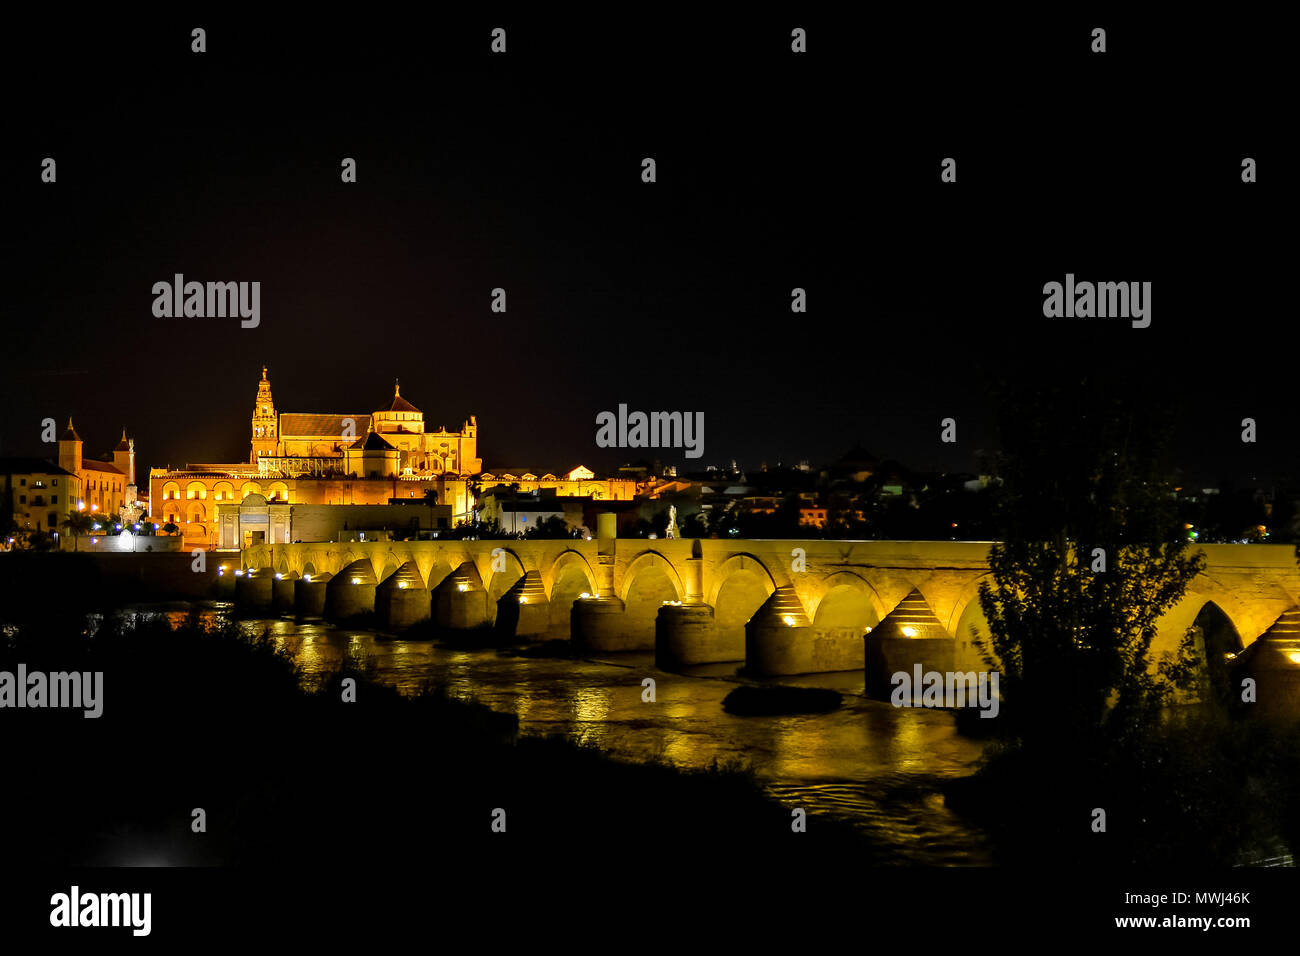 Nächtliche Foto von Cordoba, die Kathedrale und die römische Brücke über den Fluss Guadalquivir, alle von der gelben Lampen und Laternen beleuchteten Stockfoto